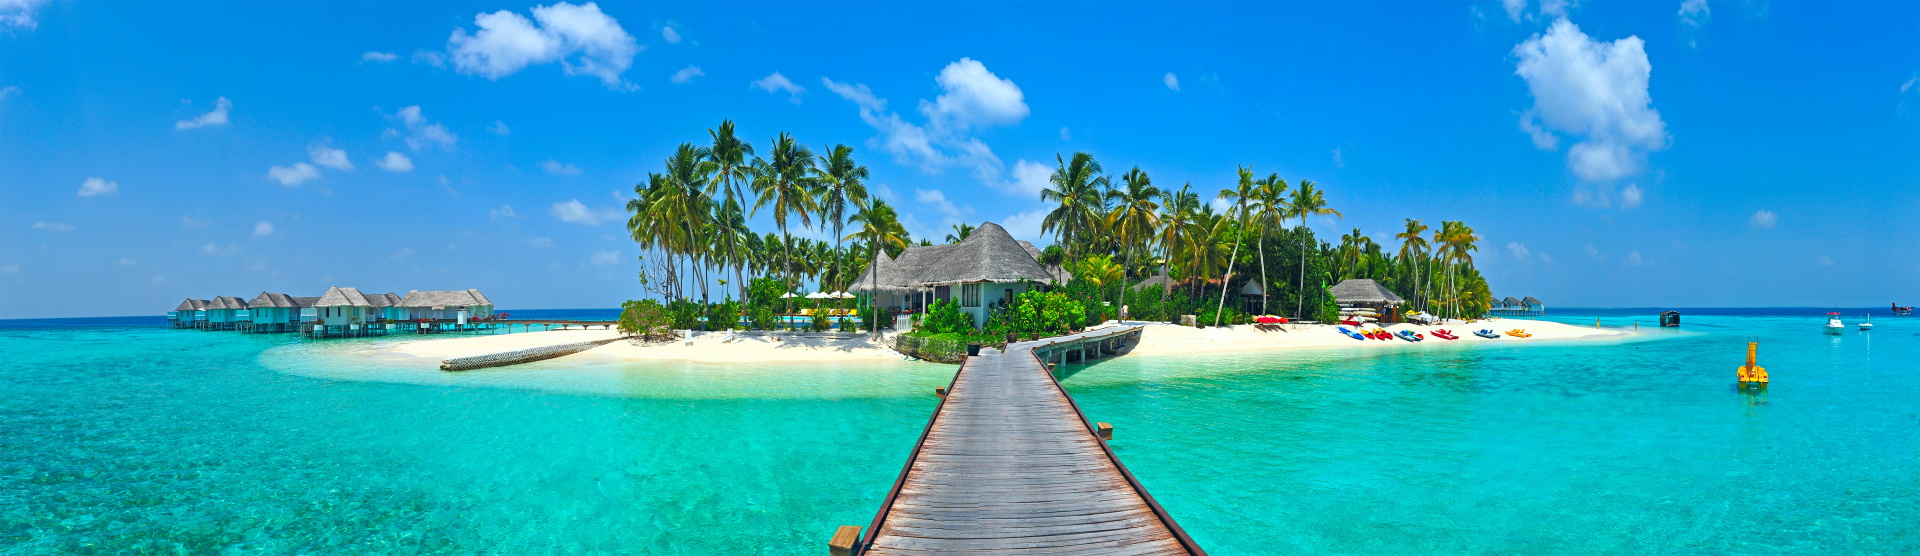 Malediven Panorama